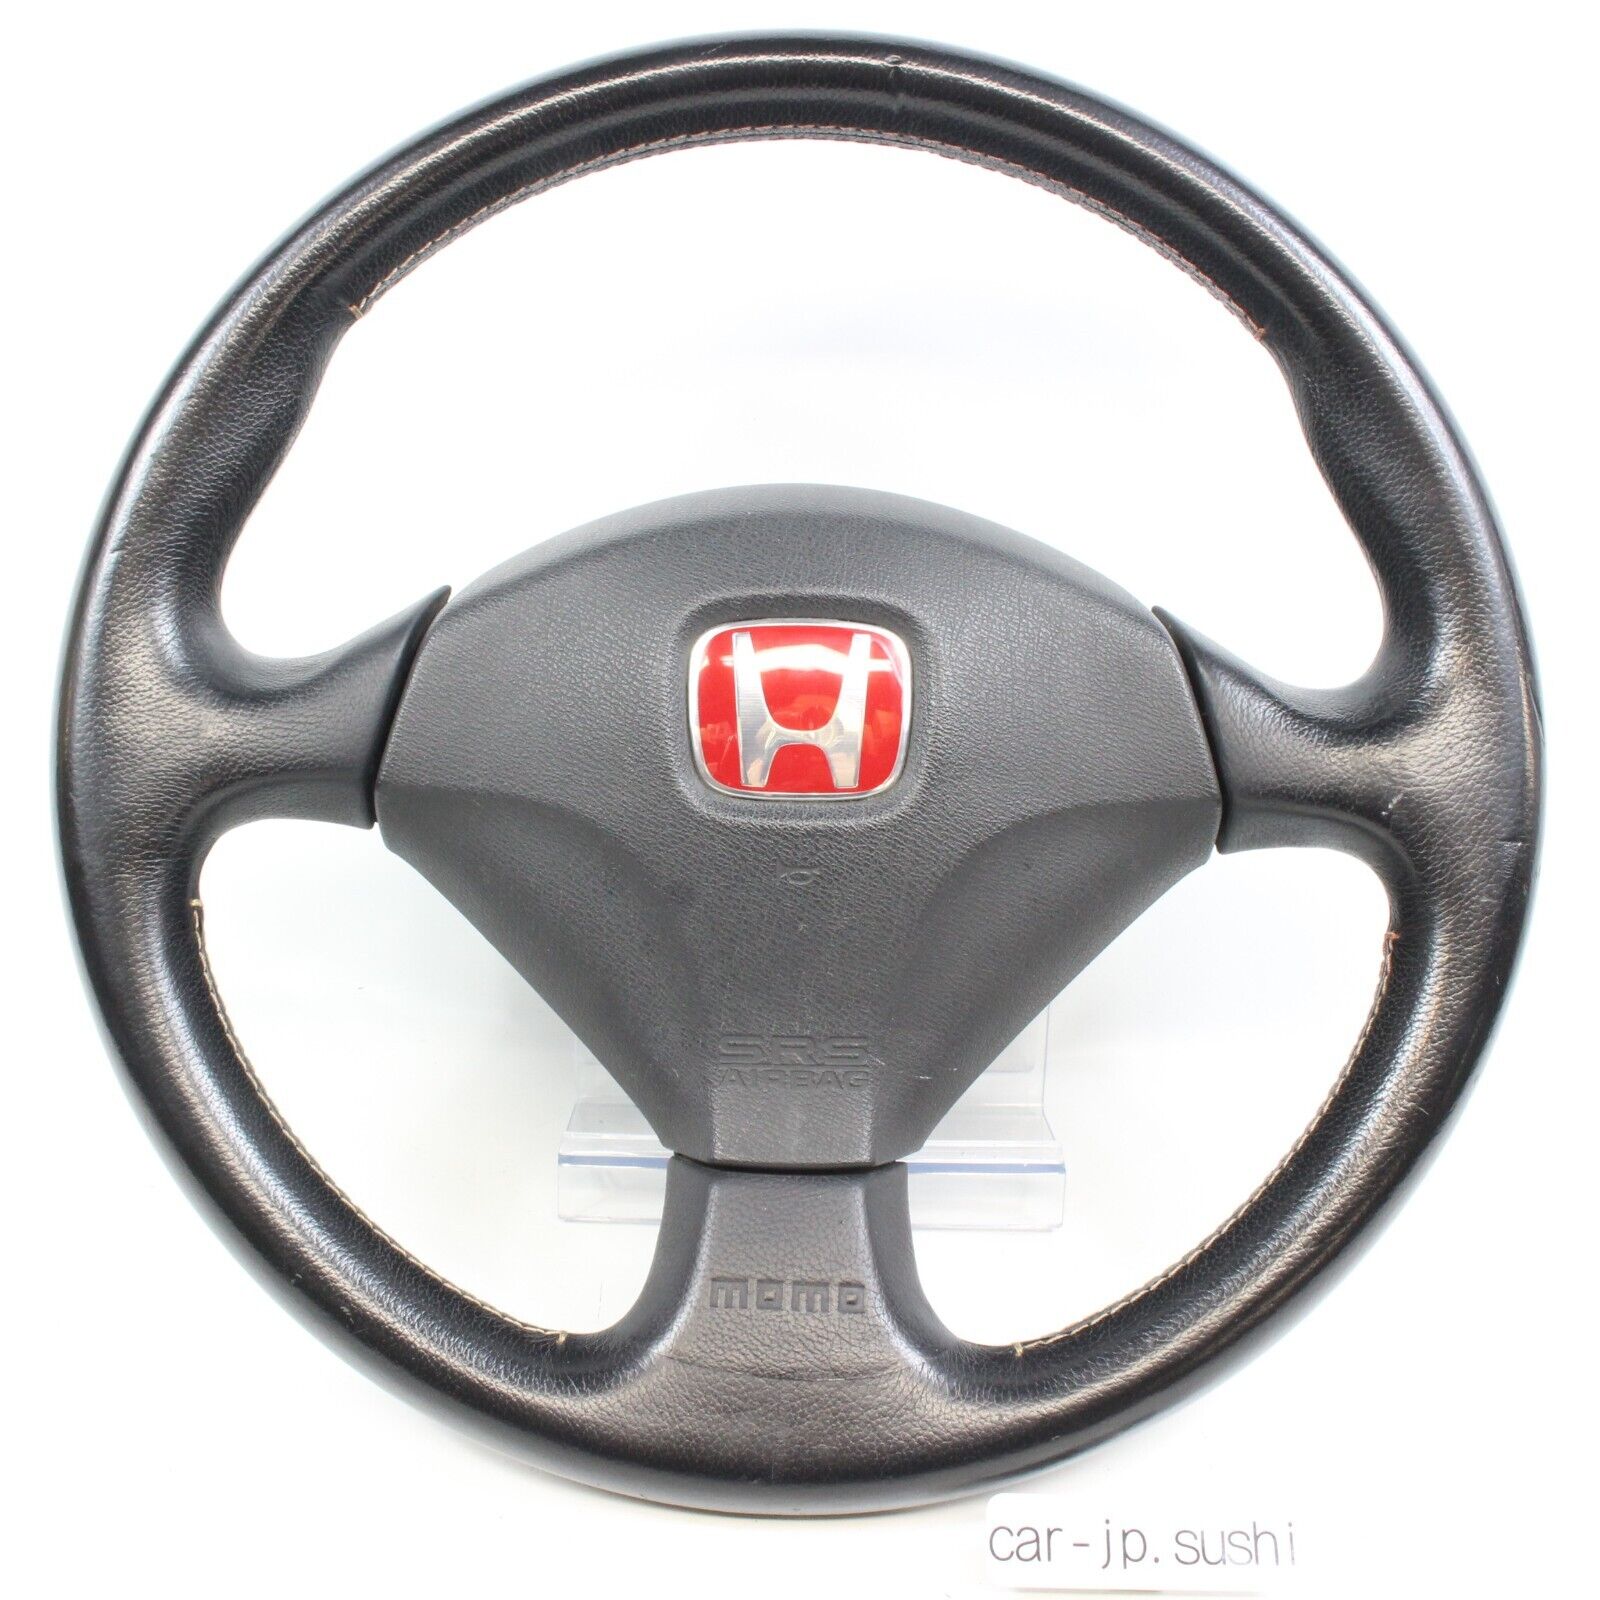 HONDA Genuine INTEGRA S2000 Civic Type R DC5 MOMO Steering Wheel EP3 CL7 EK9 OEM